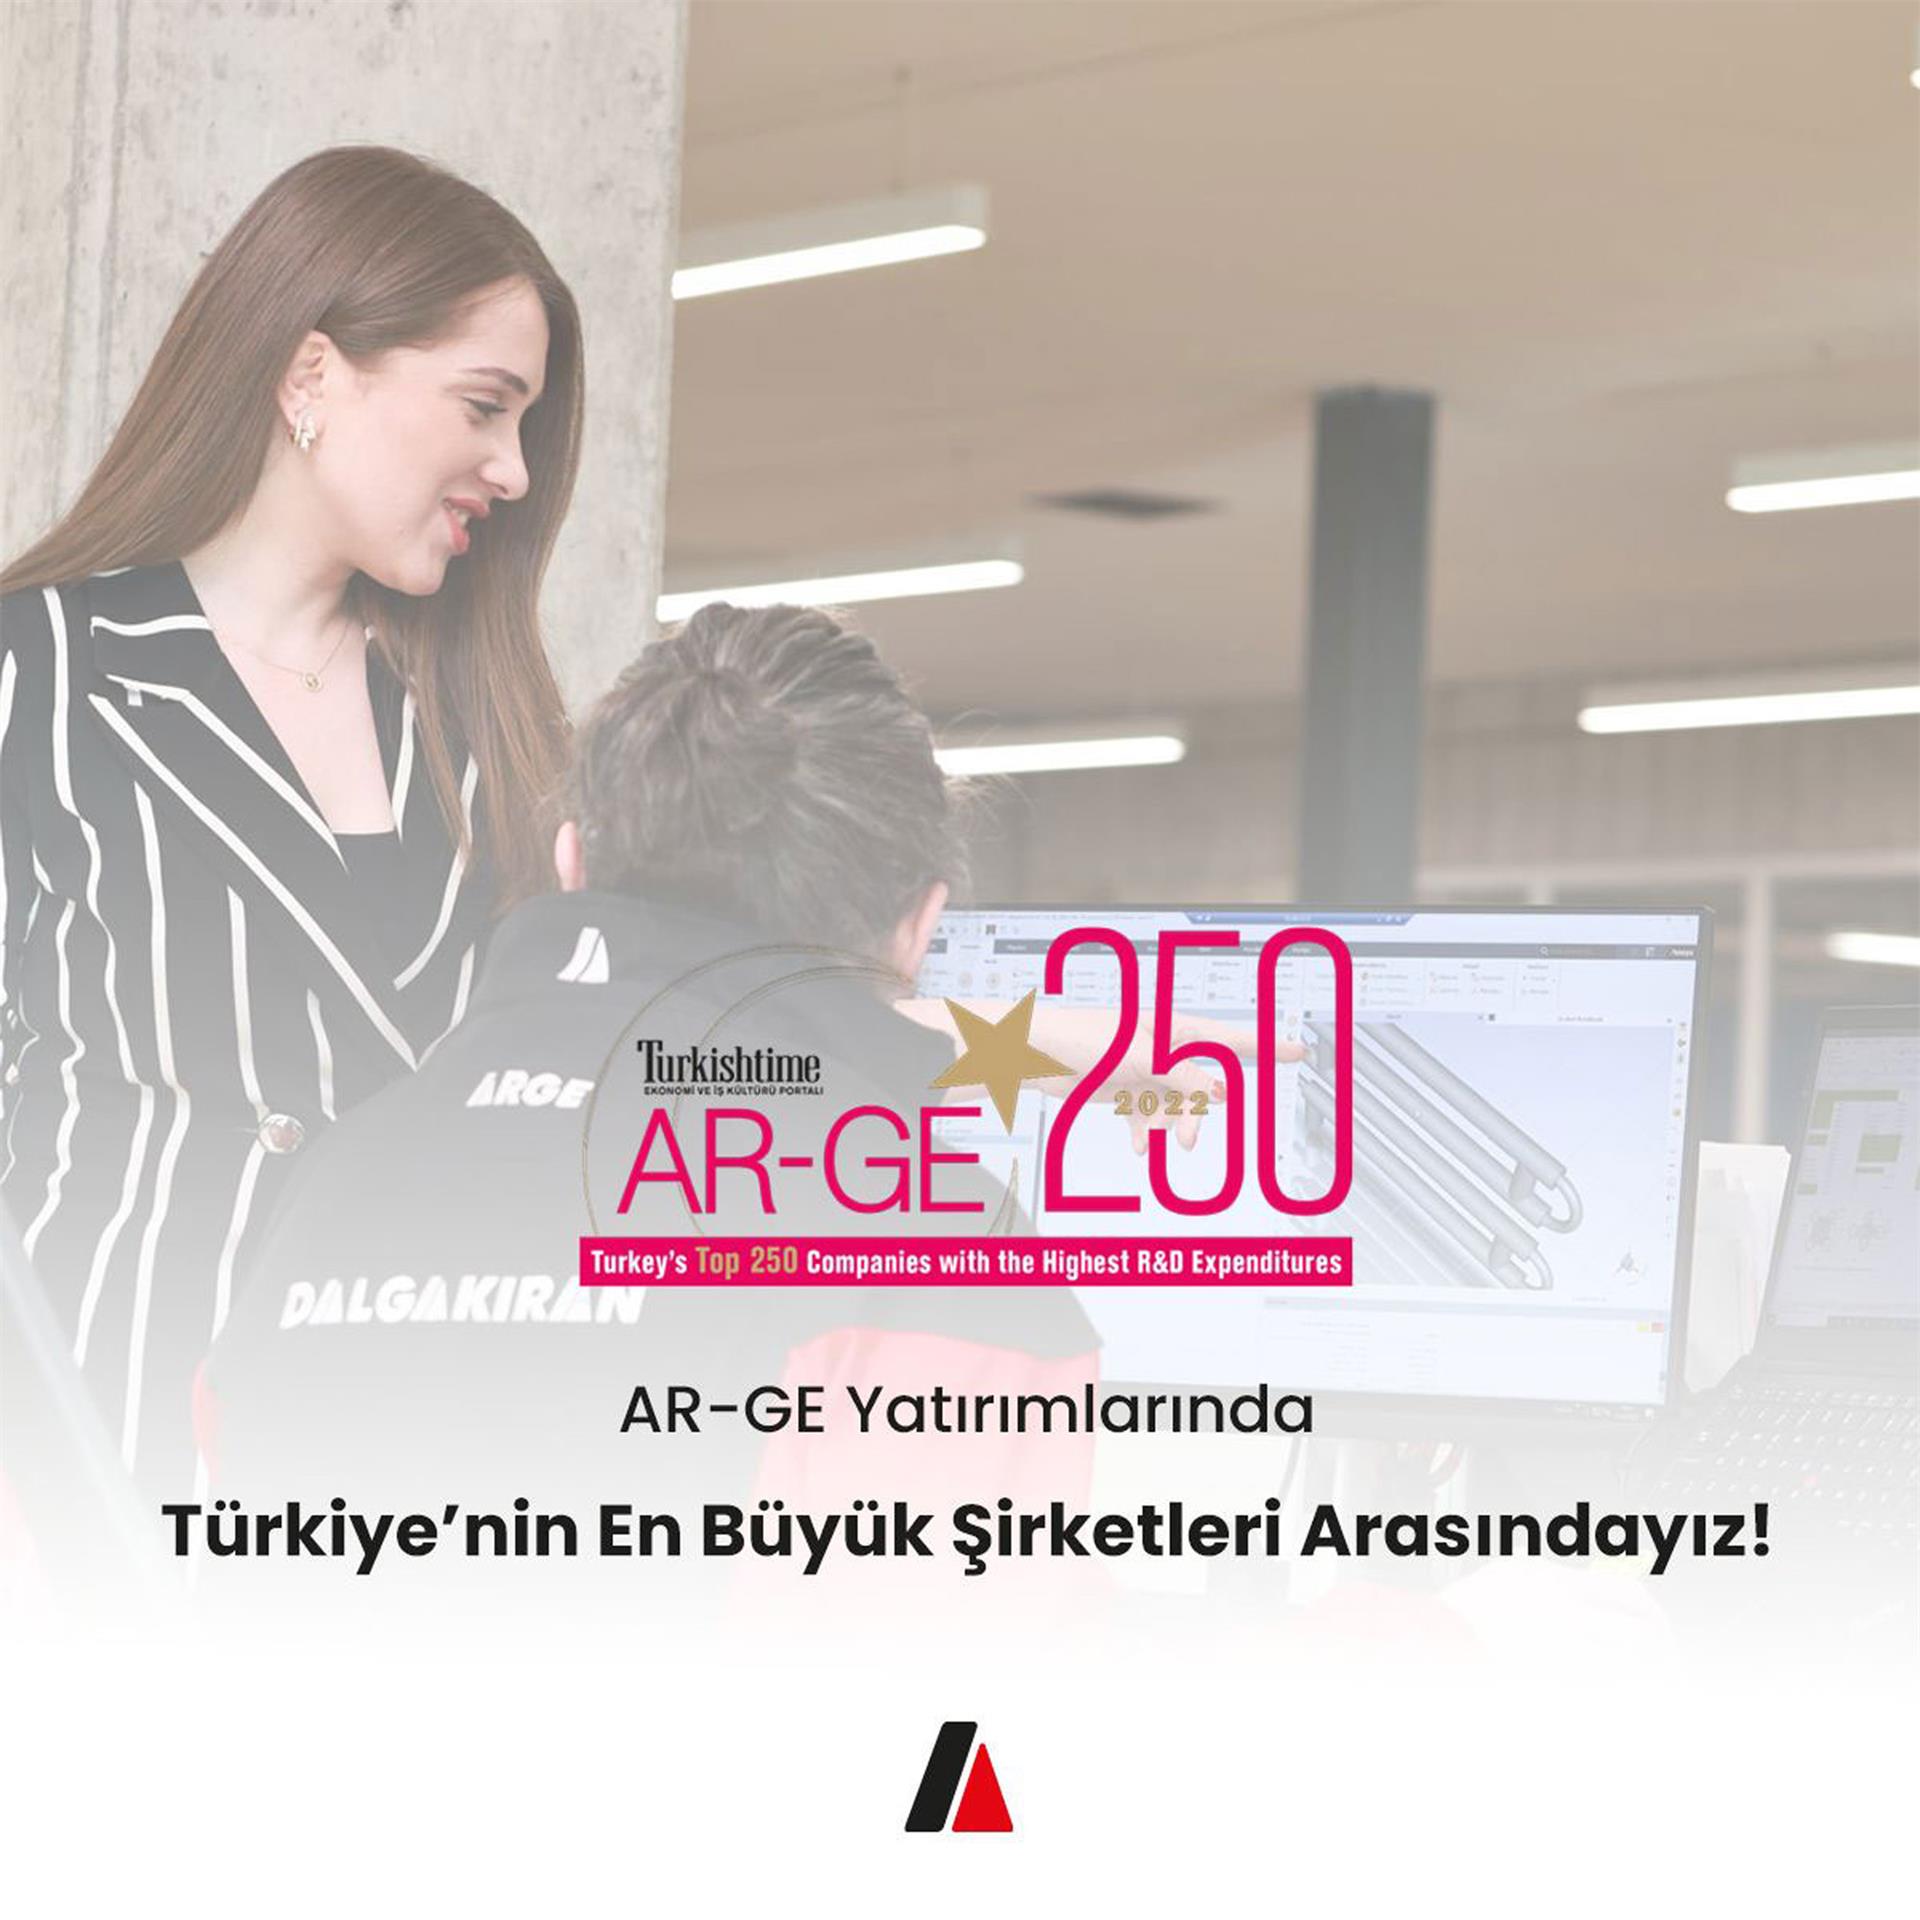 AR-GE Yatırımlarında Türkiye'nin En Büyük Şirketleri Arasındayız!